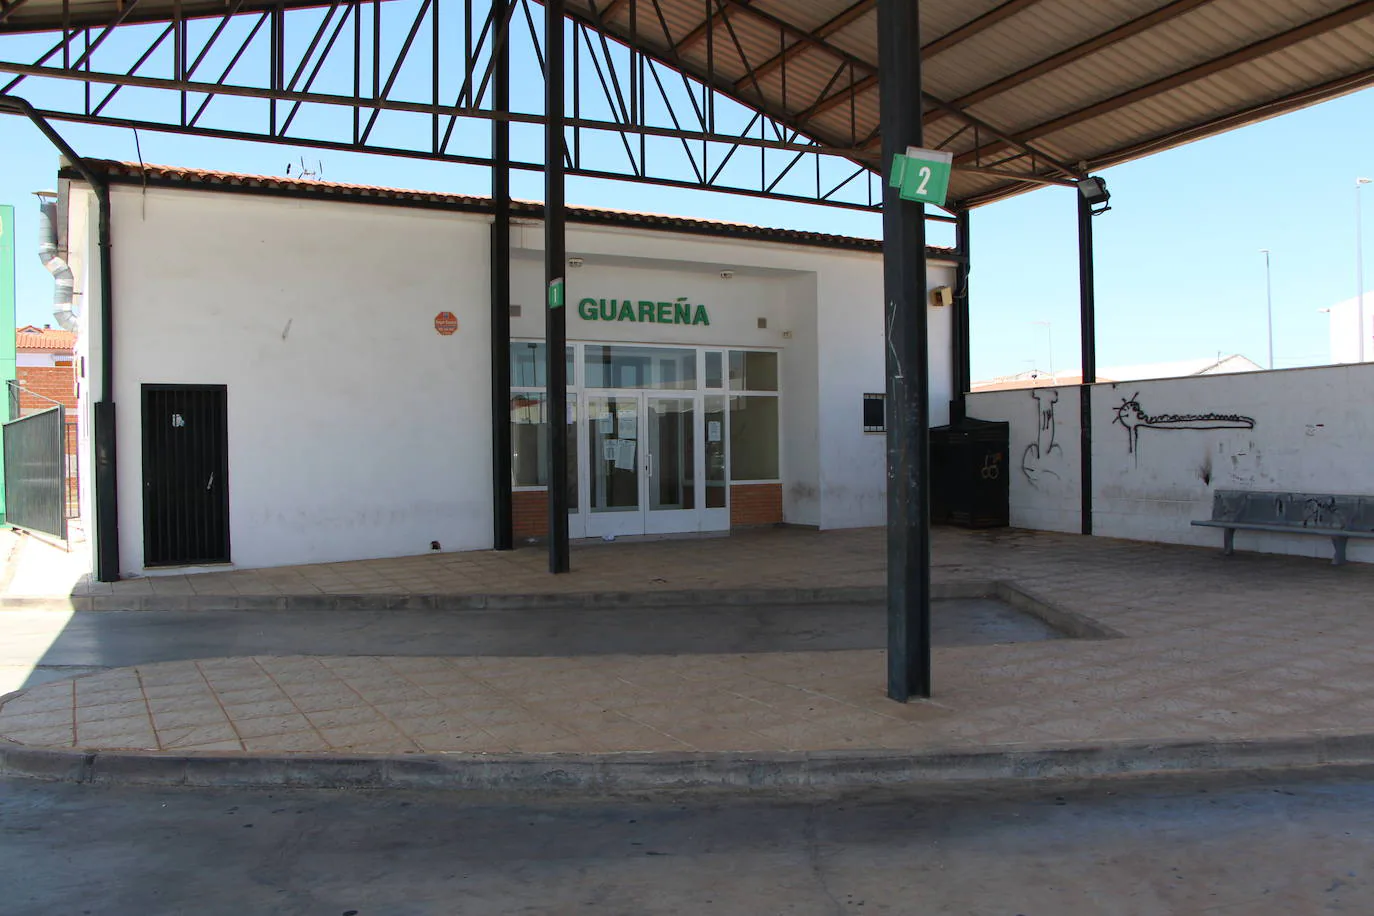 Estación de autobuses de Guareña.